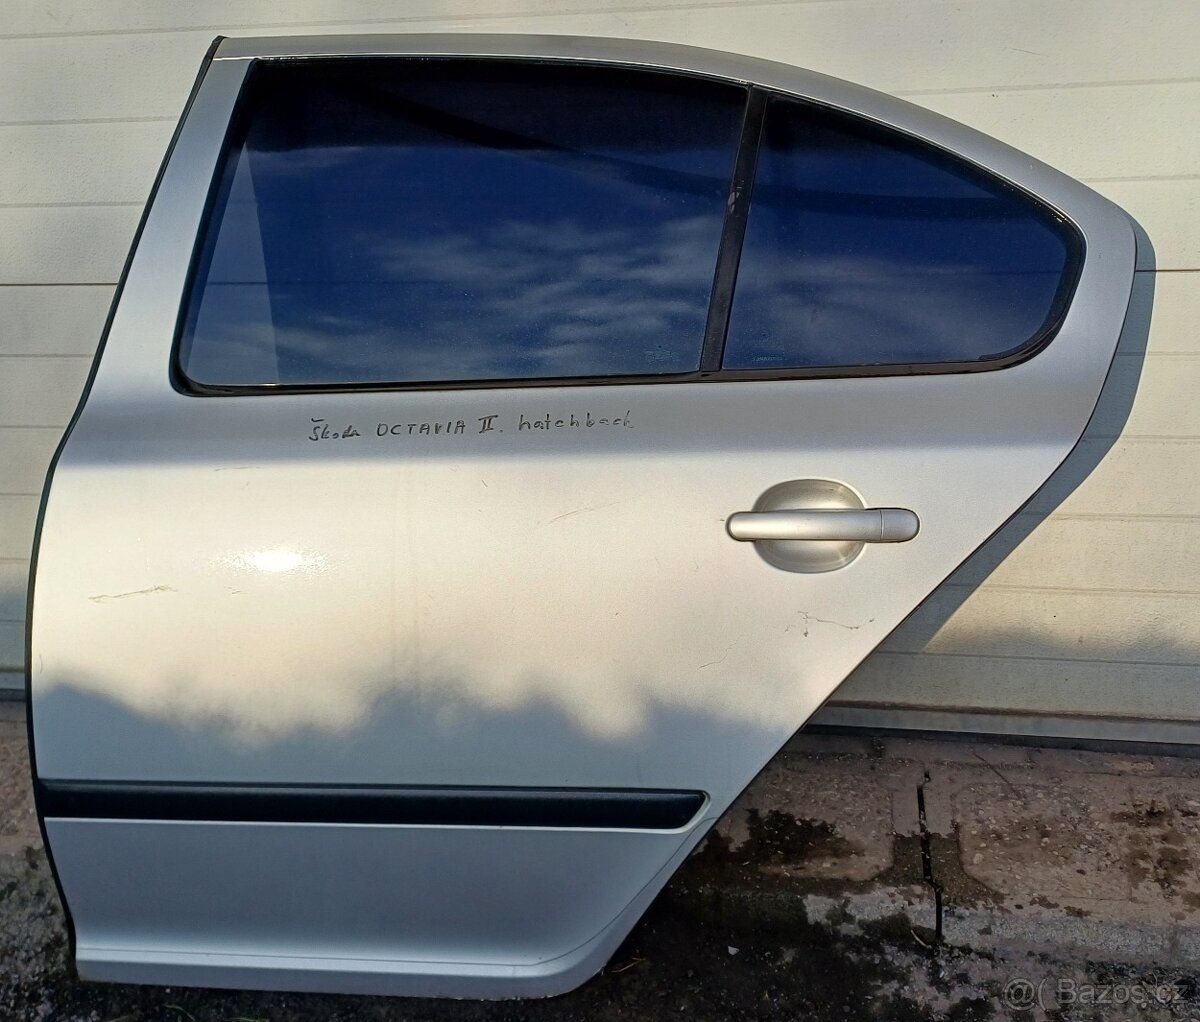 Dveře Škoda Octavia II hatchback levé zadní